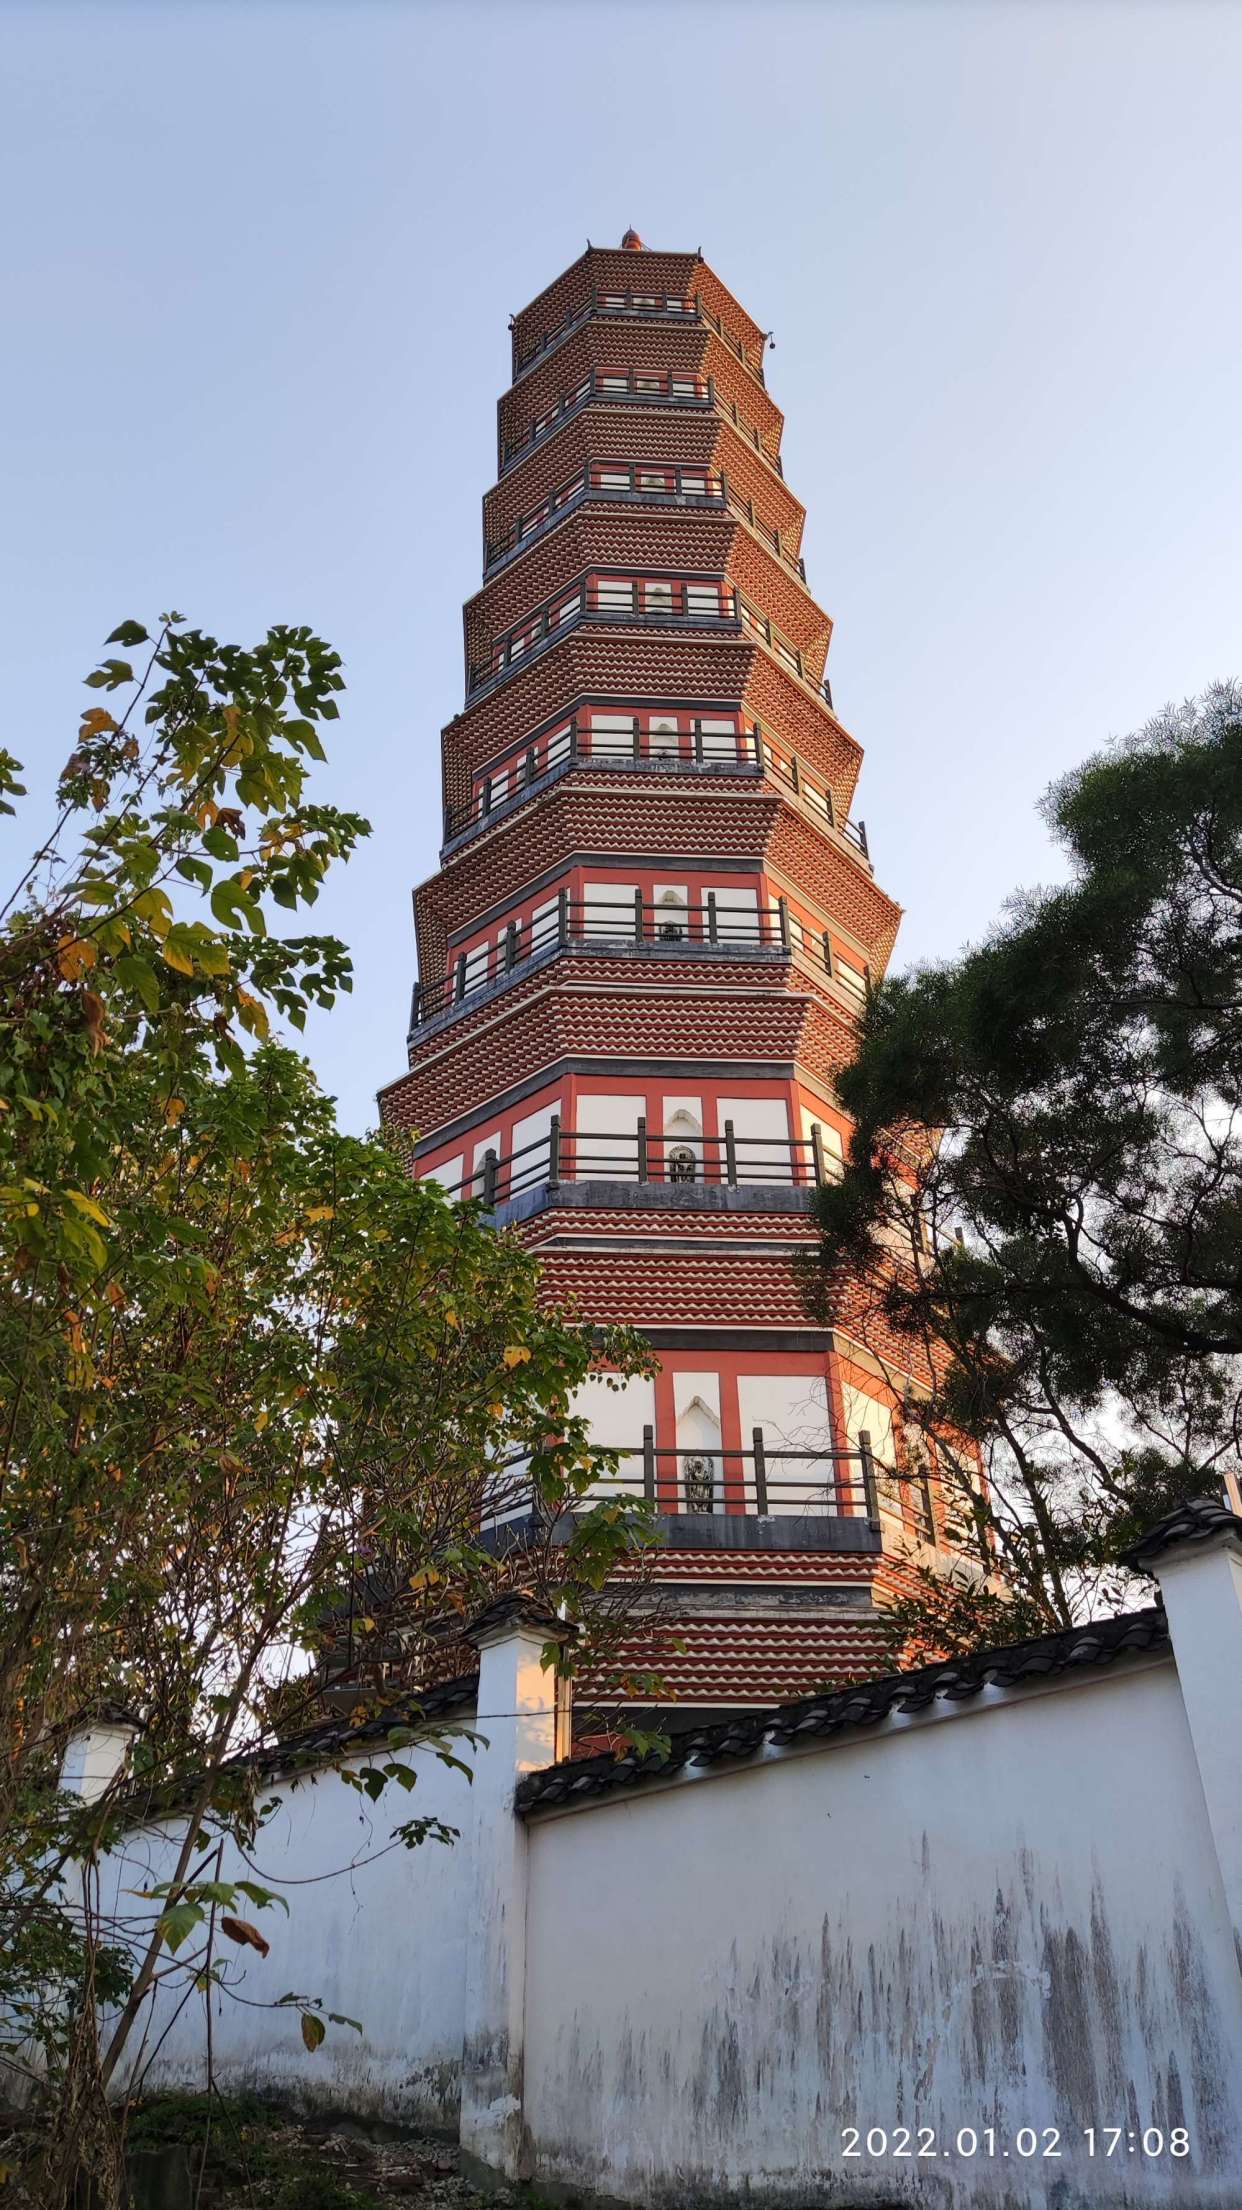 游览明代修建的琶洲塔